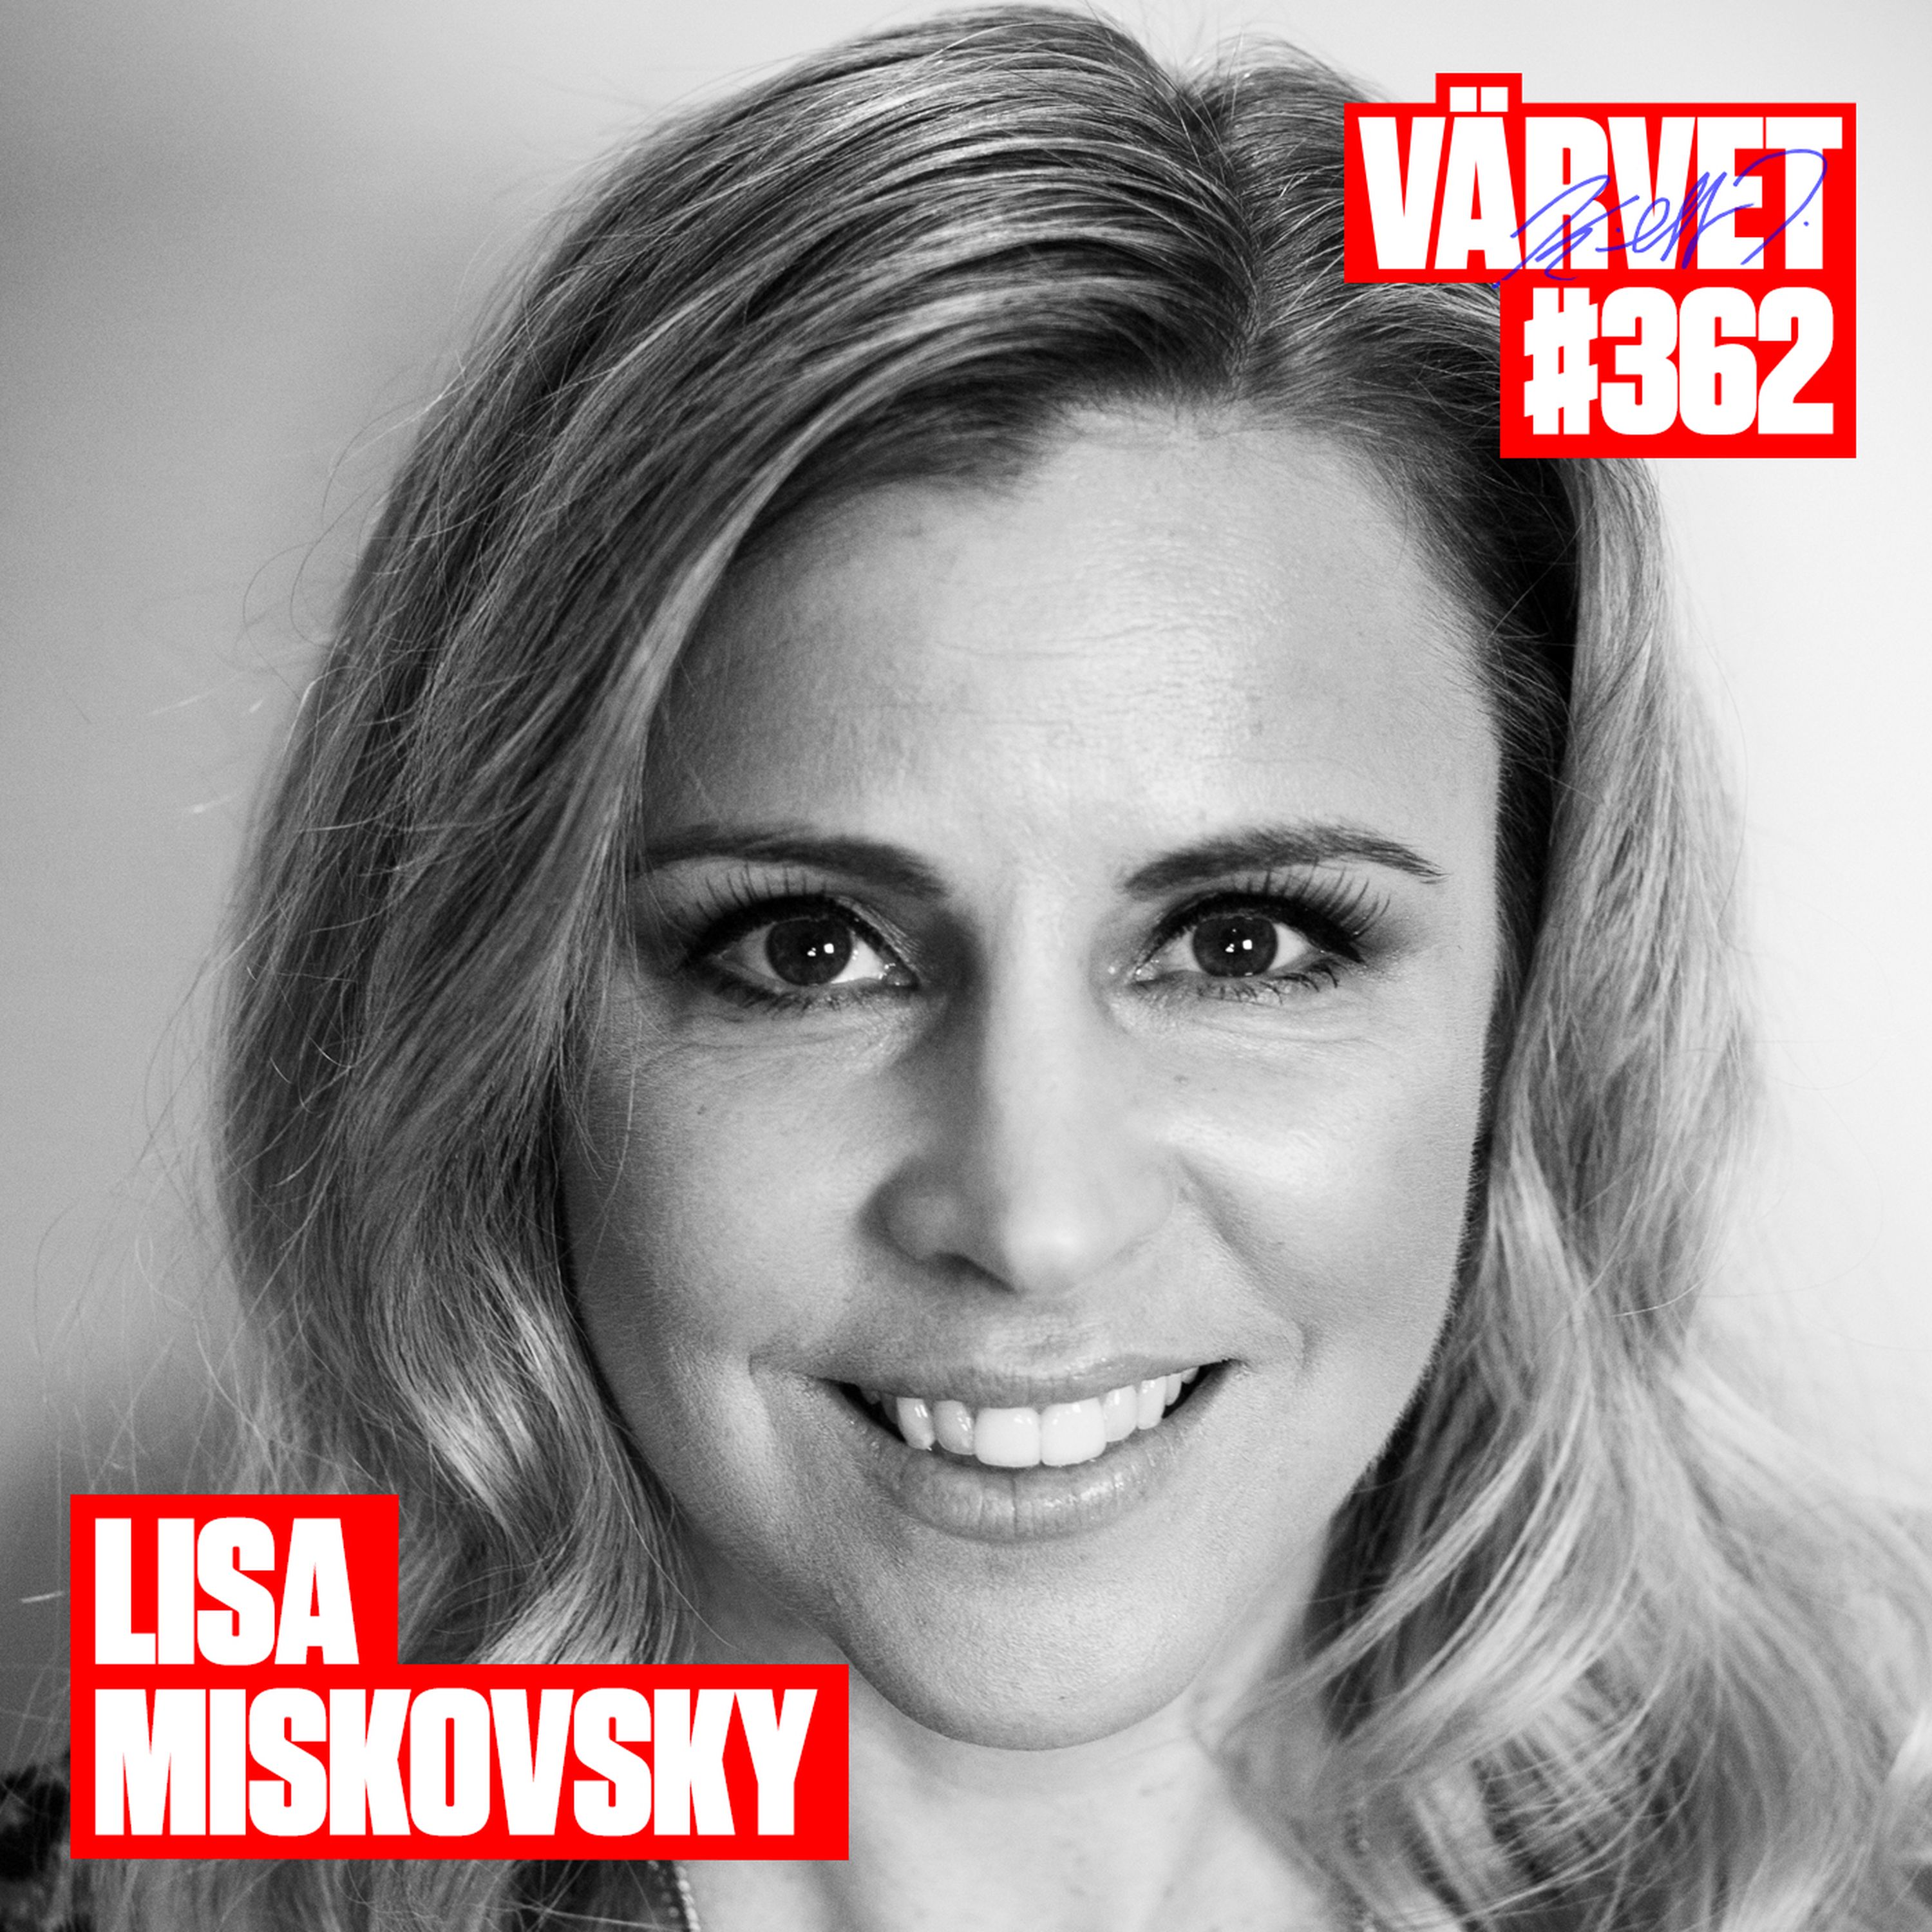 KORT VERSION - #362: Lisa Miskovsky